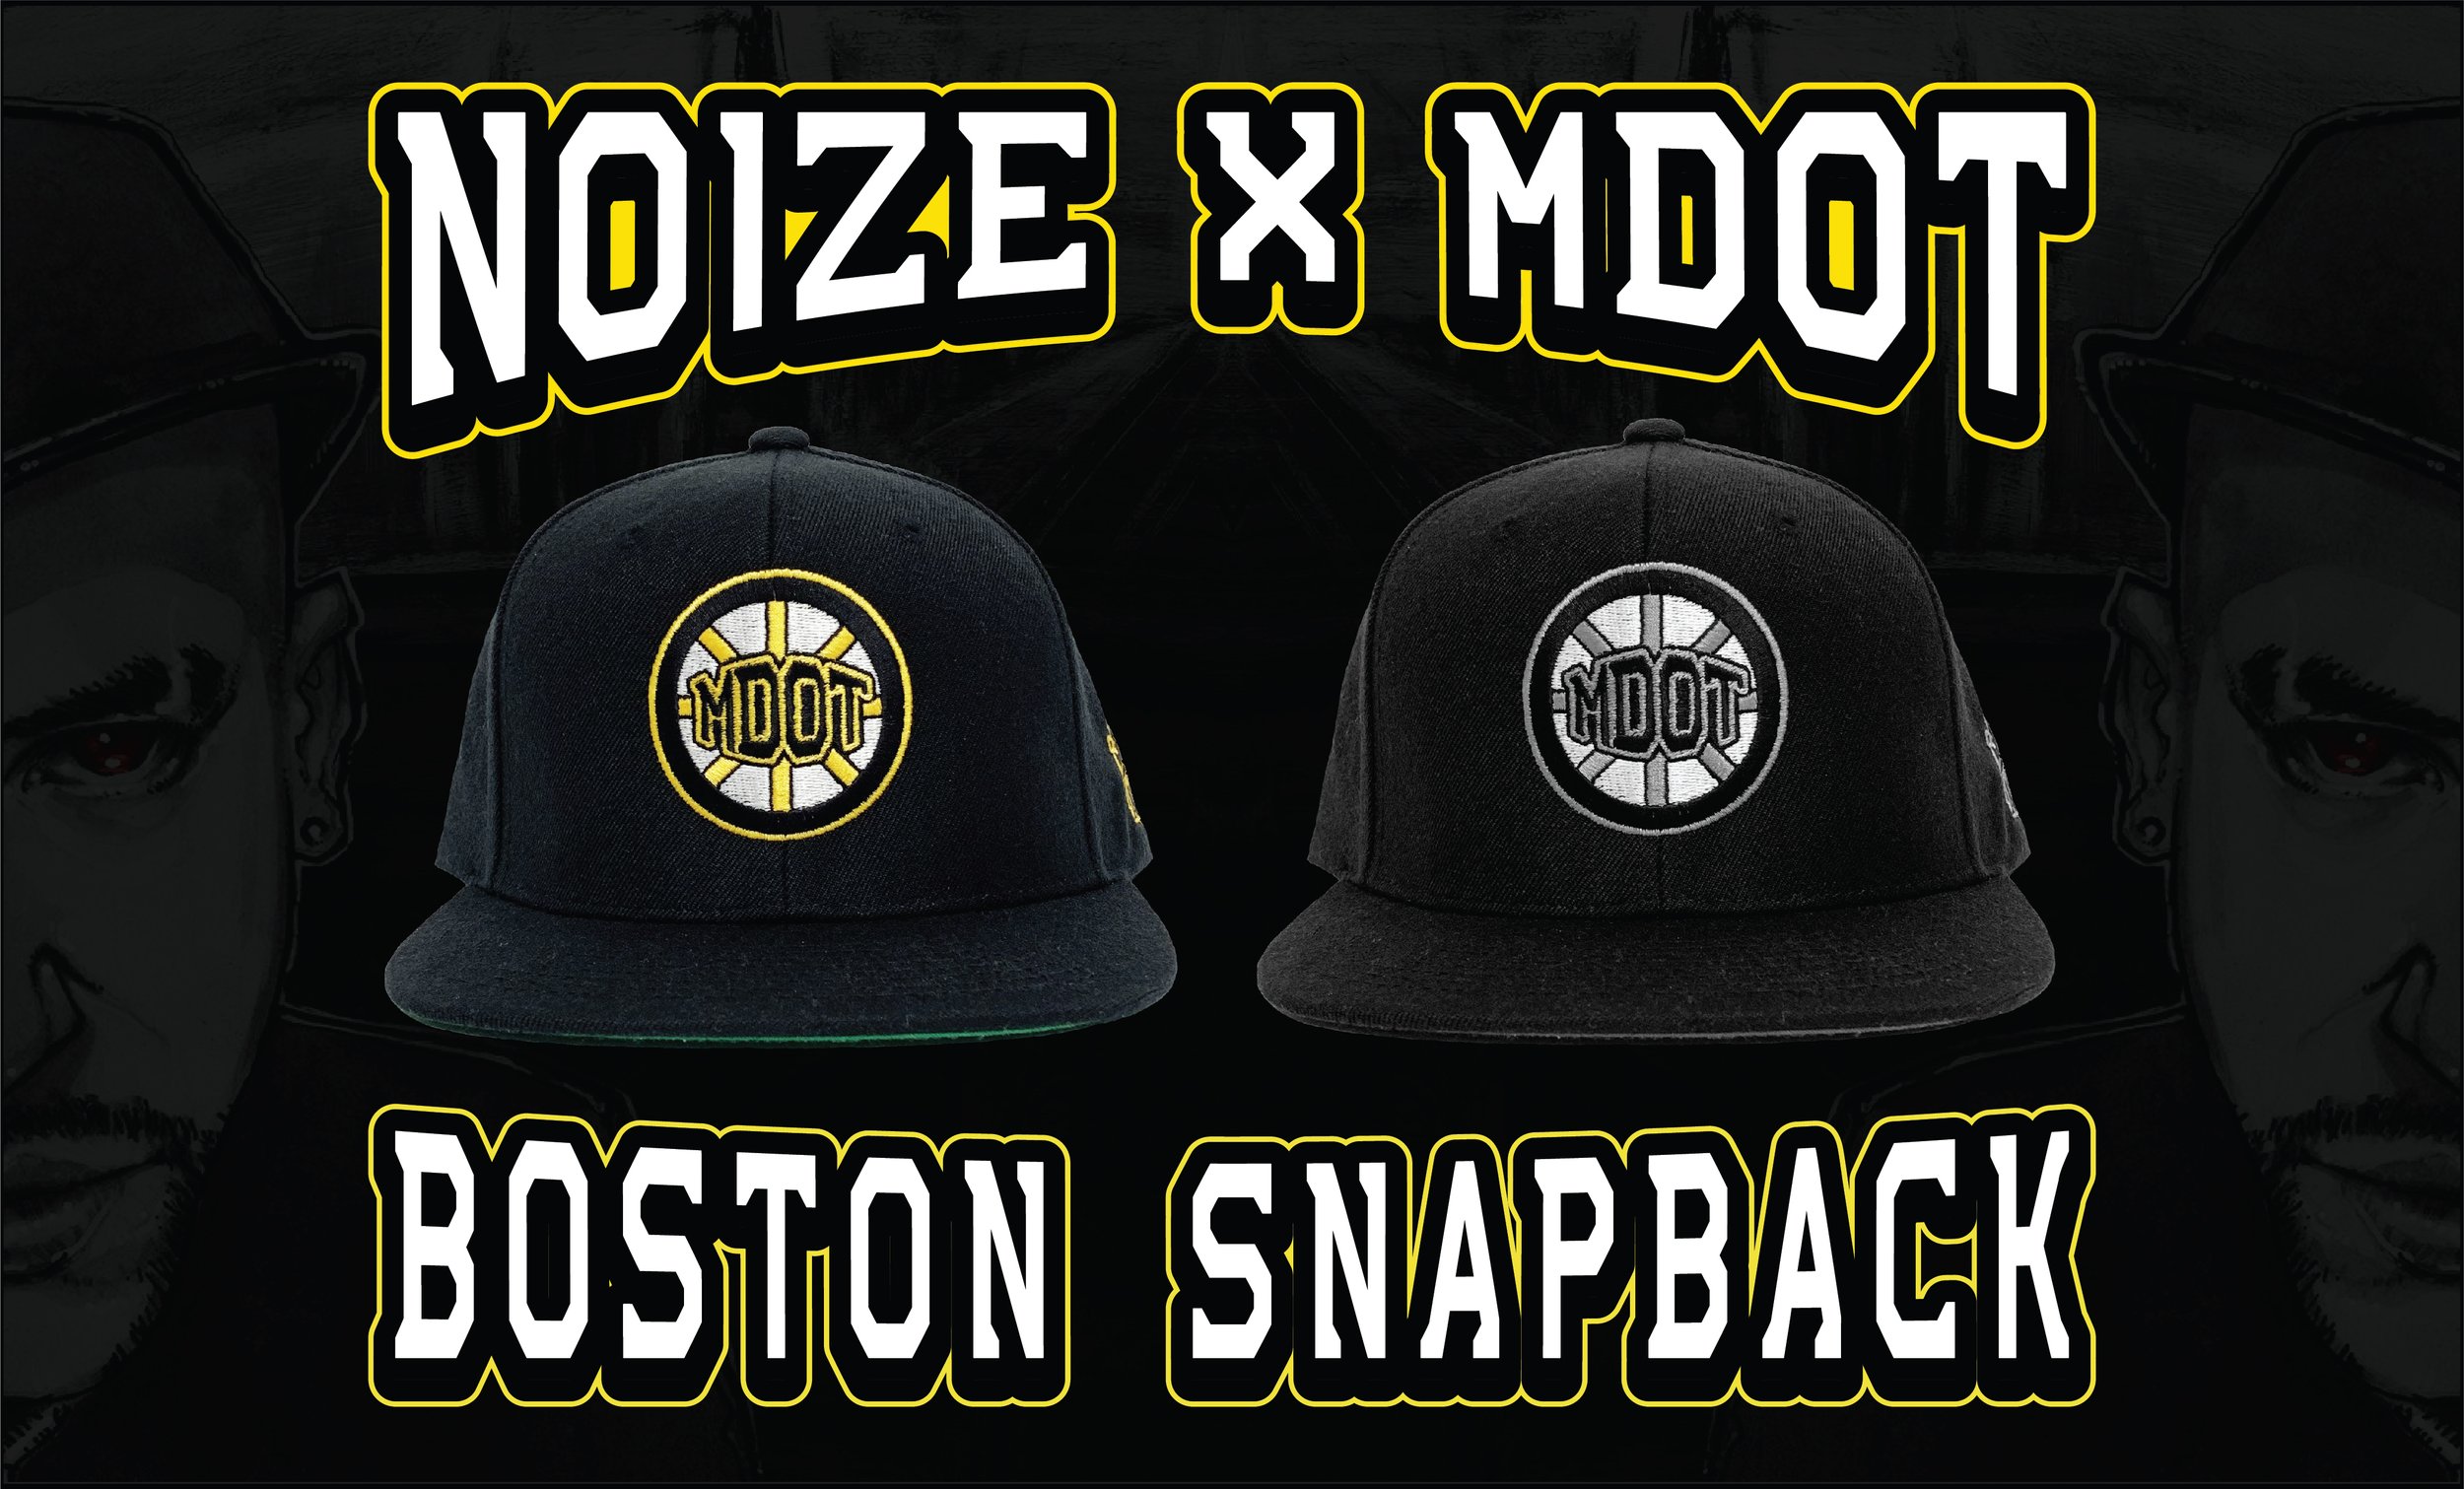 MDot Boston Snapback Web Slider v2.jpg